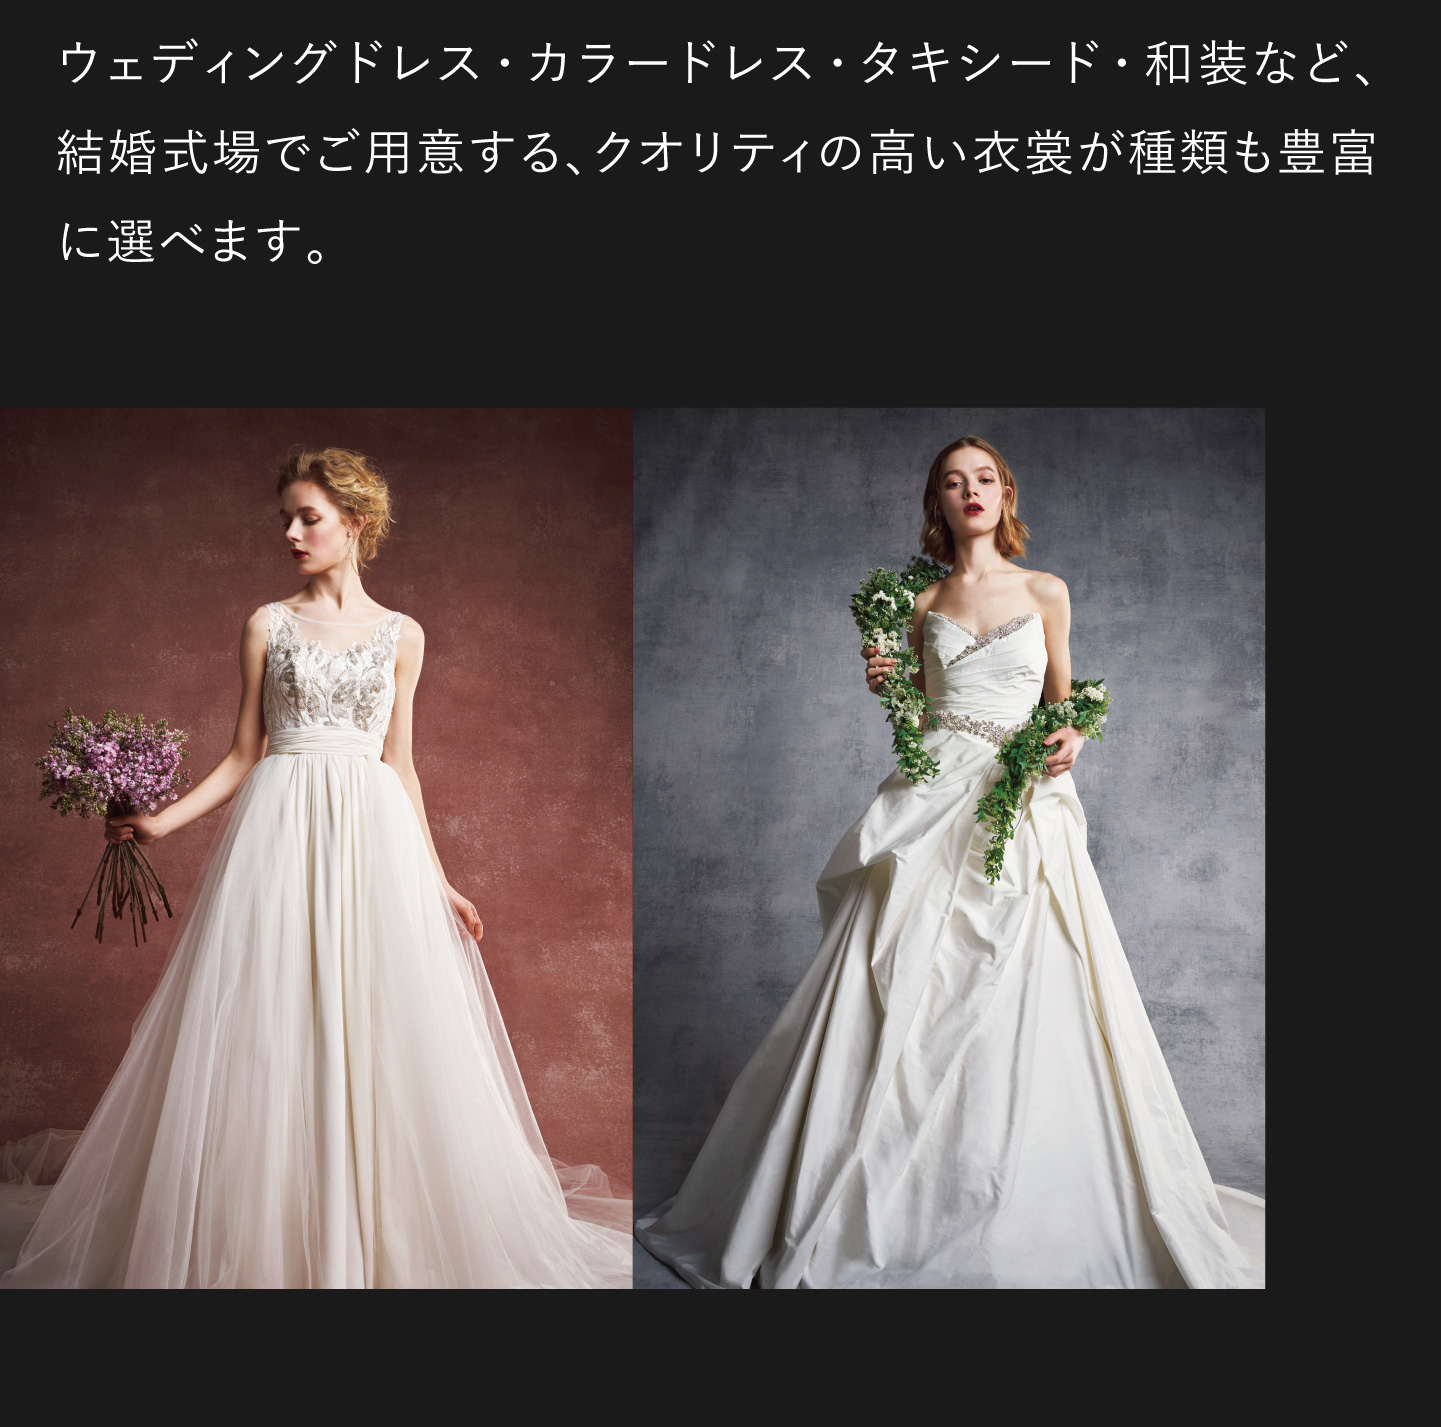 ウェディングドレス・カラードレス・タキシード・和装など、結婚式場でご用意する、クオリティの高い衣裳が種類も豊富に選べます。